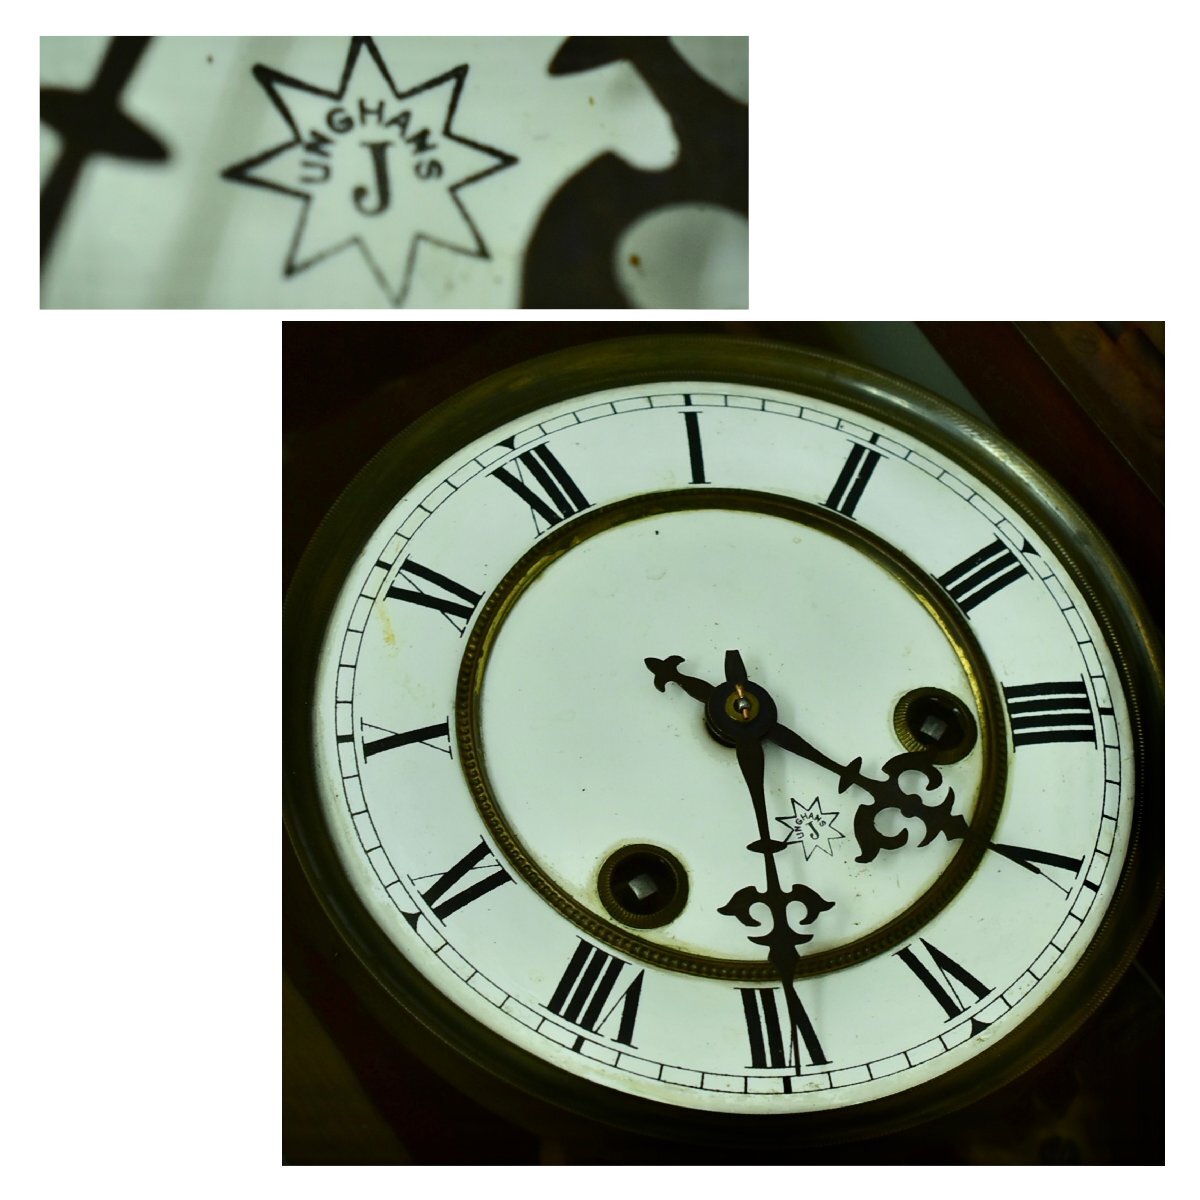 (2-4010)UNGHANS Junghans zen мой тип настенные часы длина примерный 72. Vintage retro из дерева работоспособность не проверялась [ зеленый мир .]